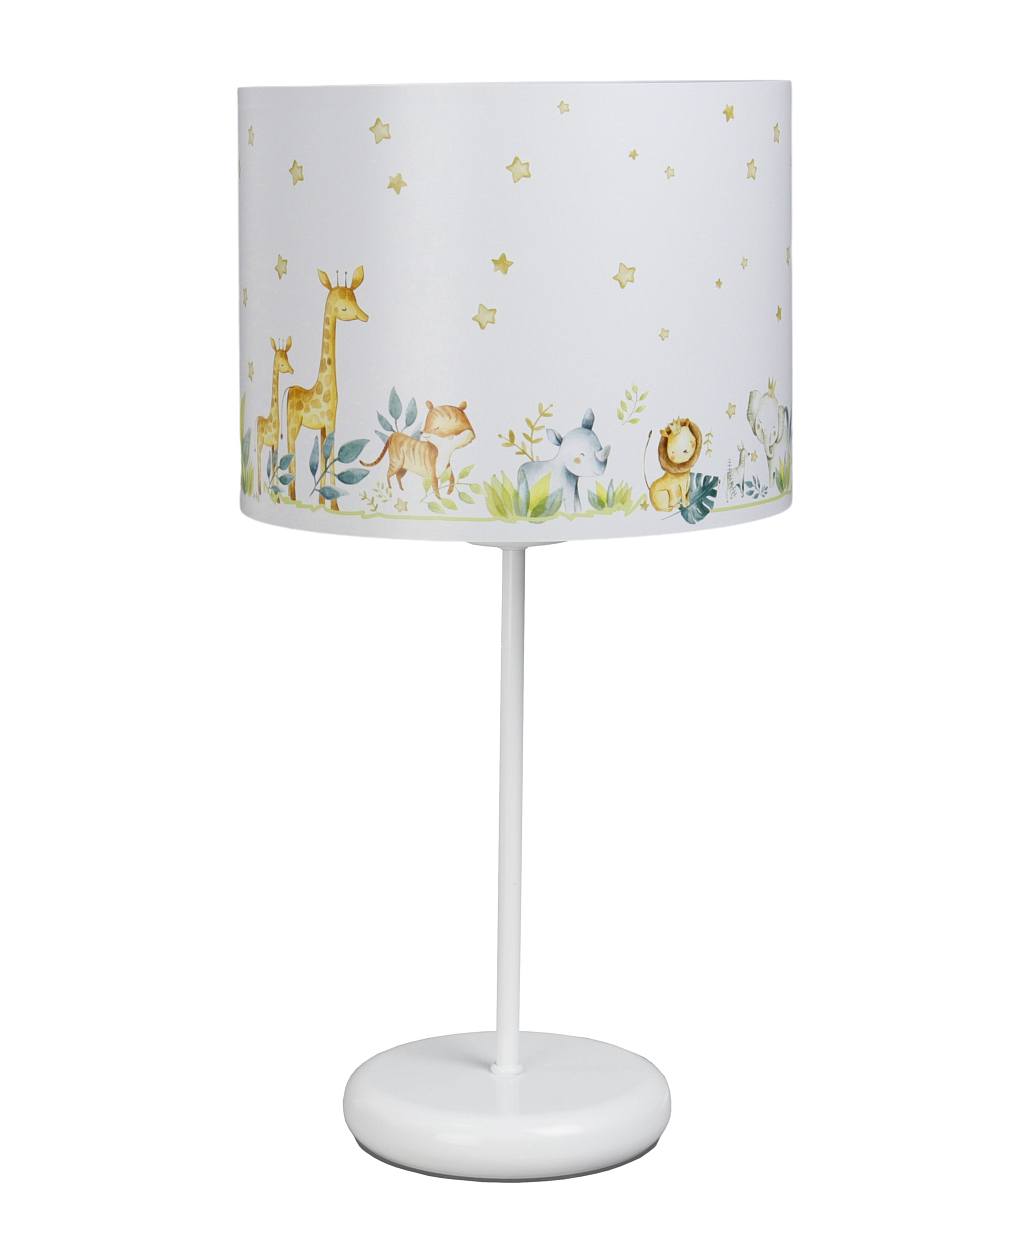 Biała lampka nocna na stolik do pokoju dziecka. Lampa nocna z kolorowym wzorem.